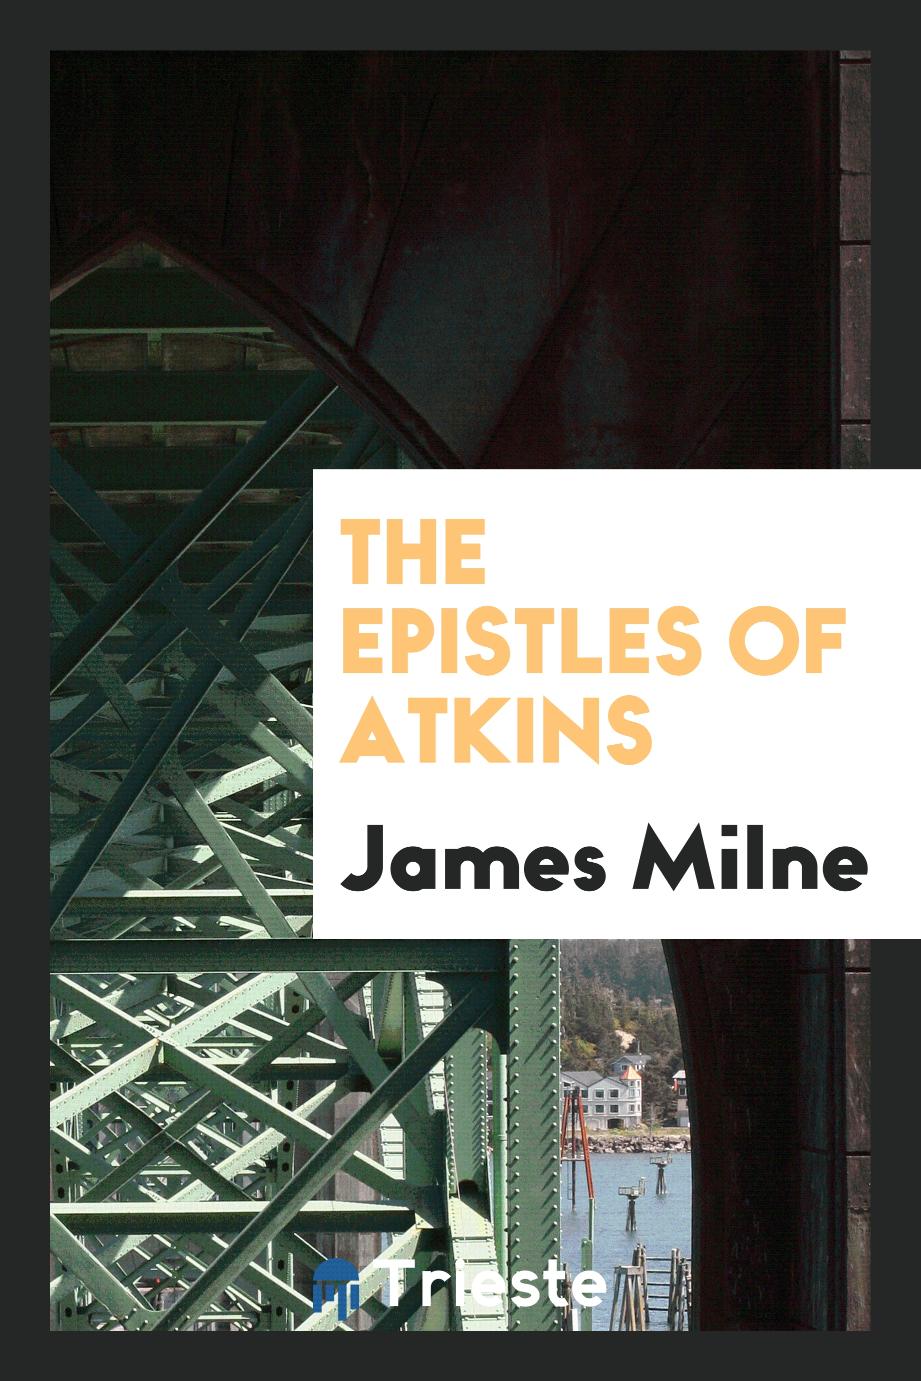 James Milne - The Epistles of Atkins